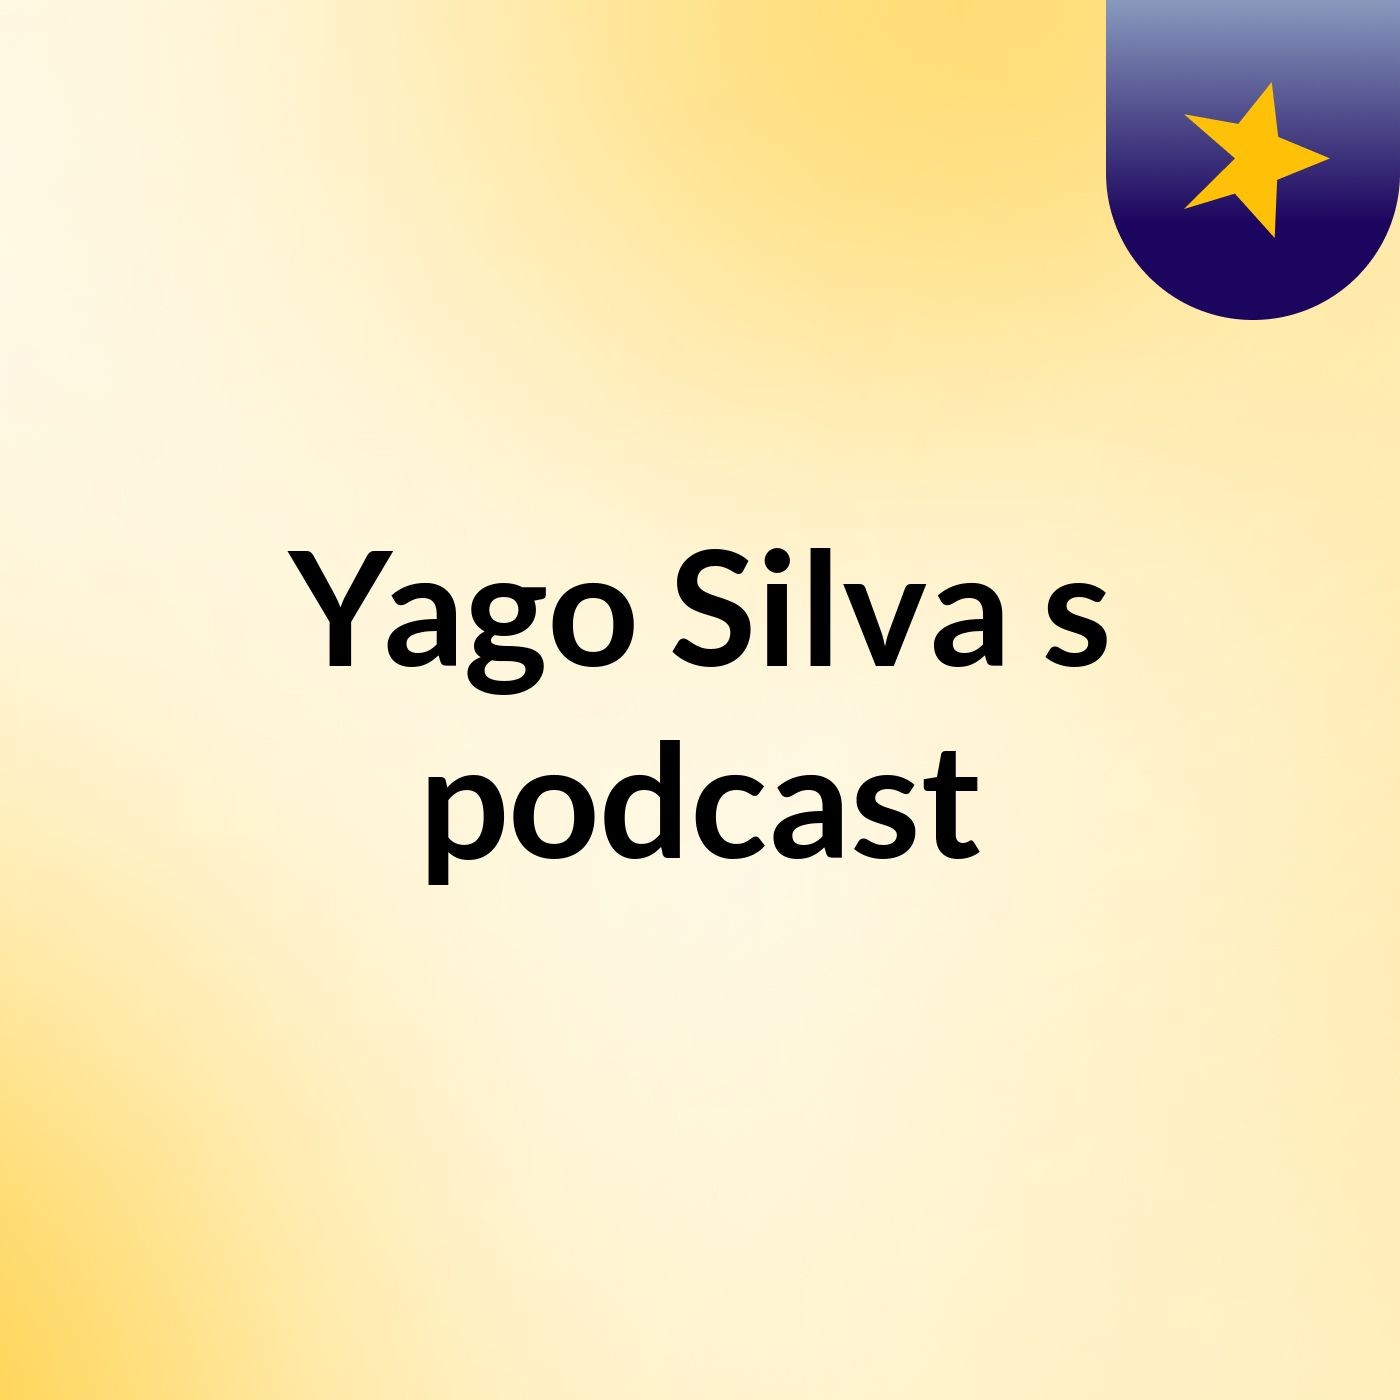 Yago Silva's podcast